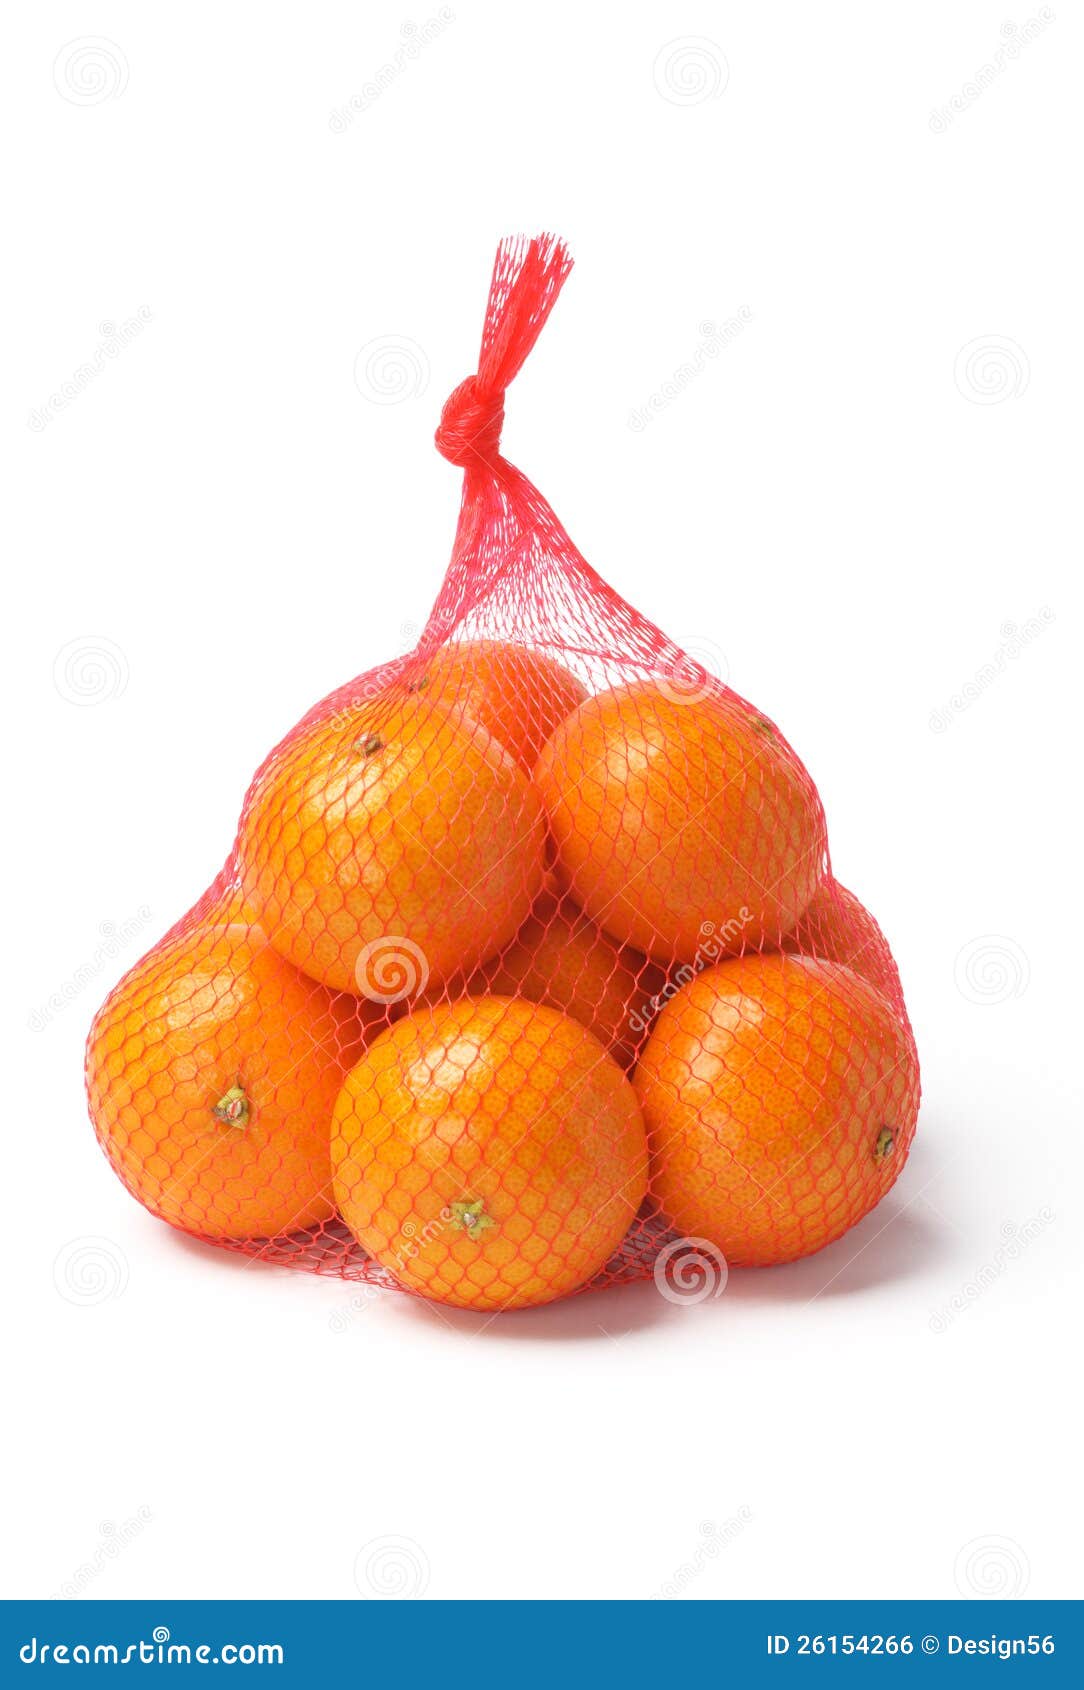 oranges in plastic mesh sack